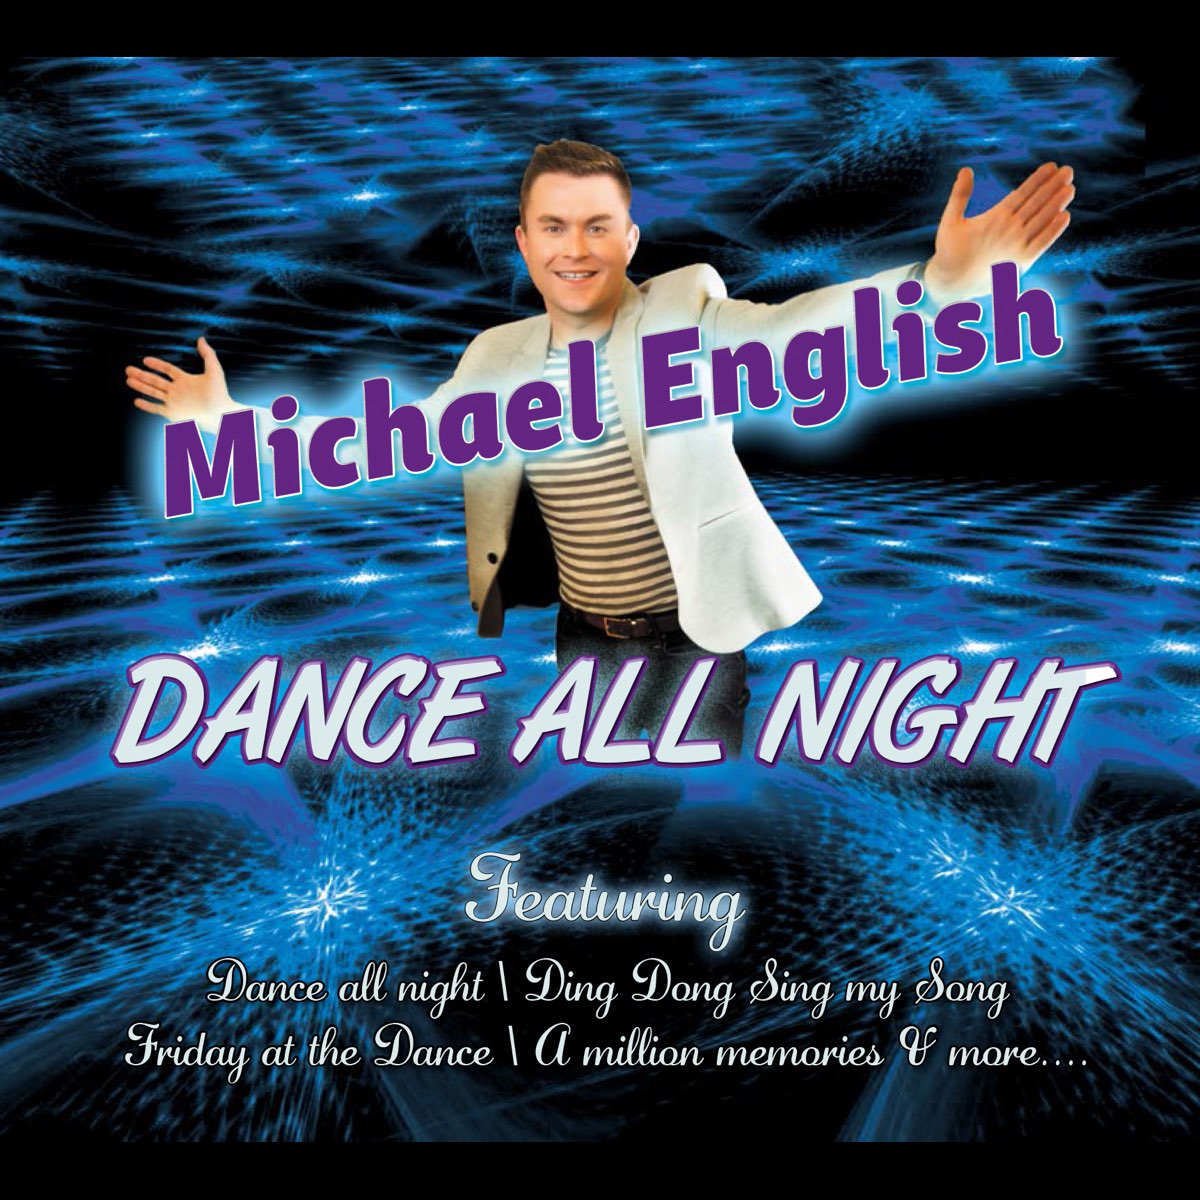 Dance английская песня. Михаэль на английском. Dance all Night фото.